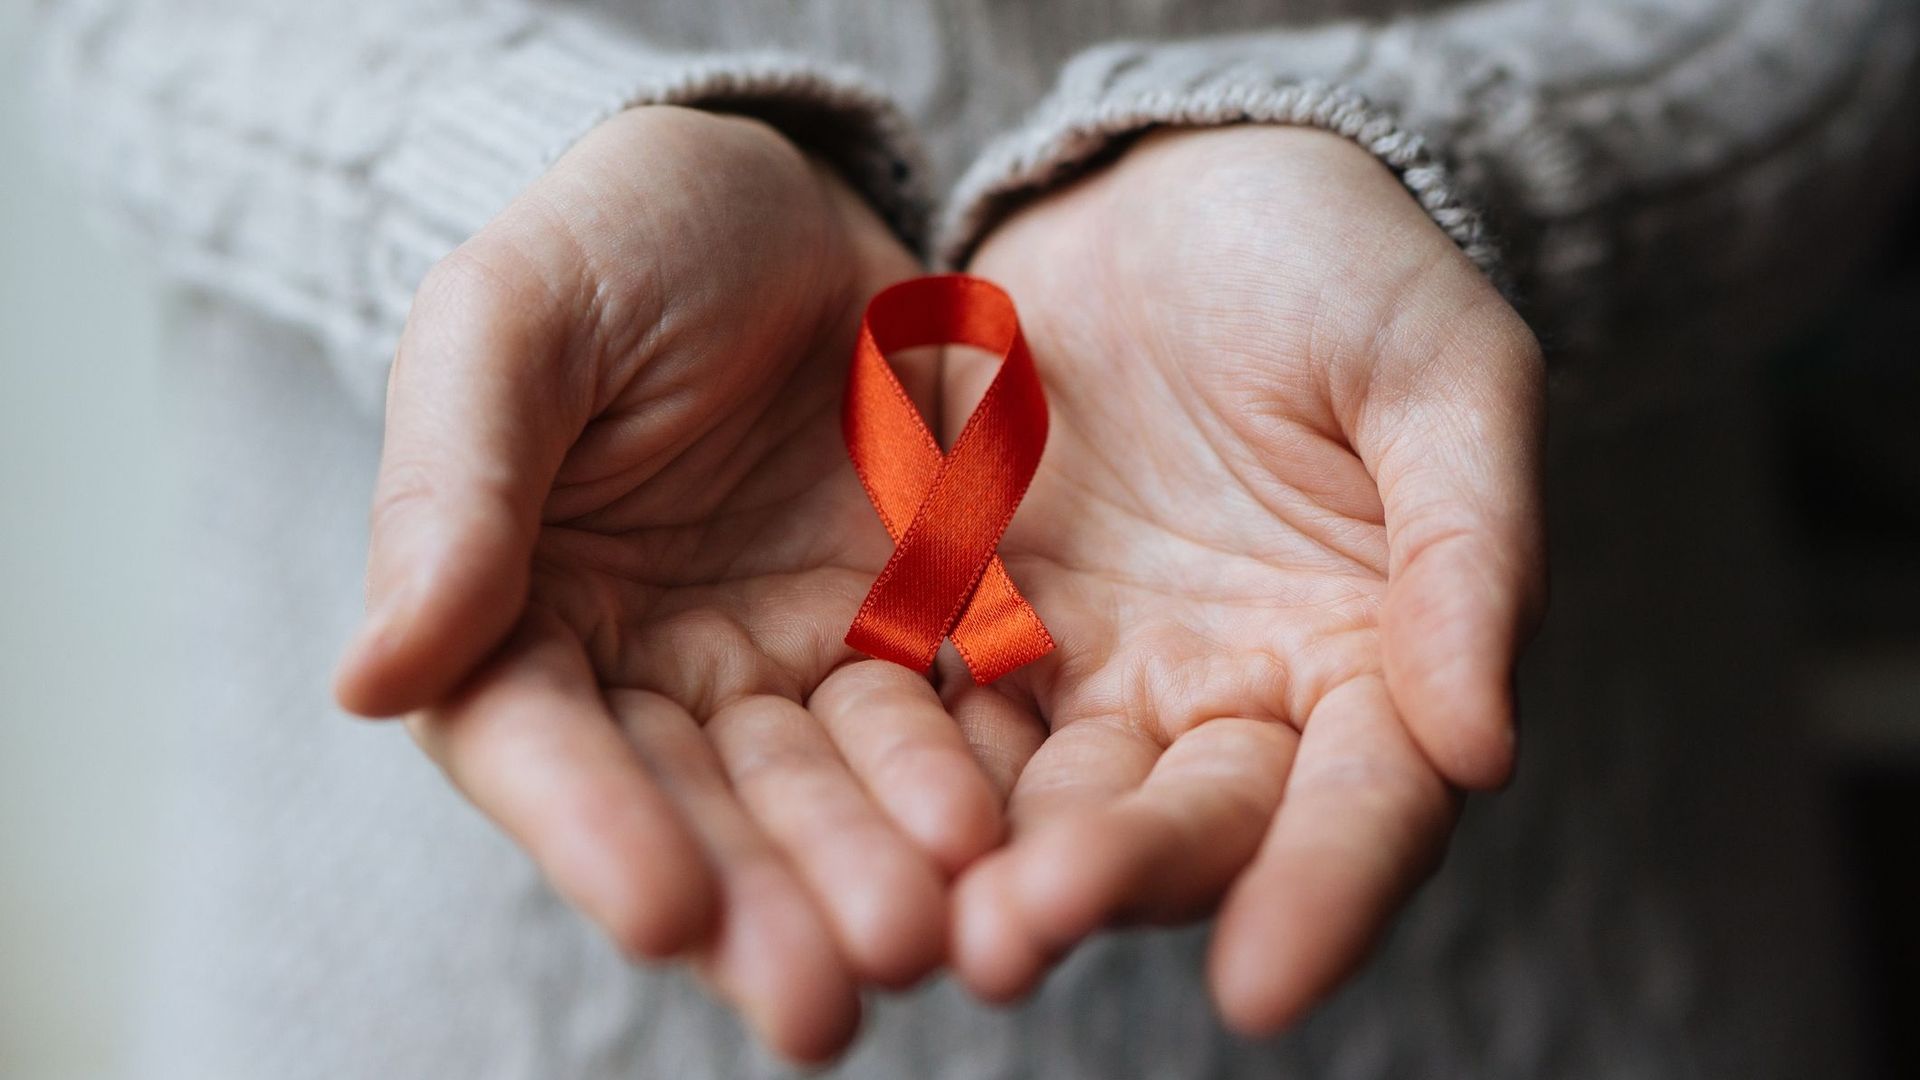 VIH: les préjugés ont la vie dure